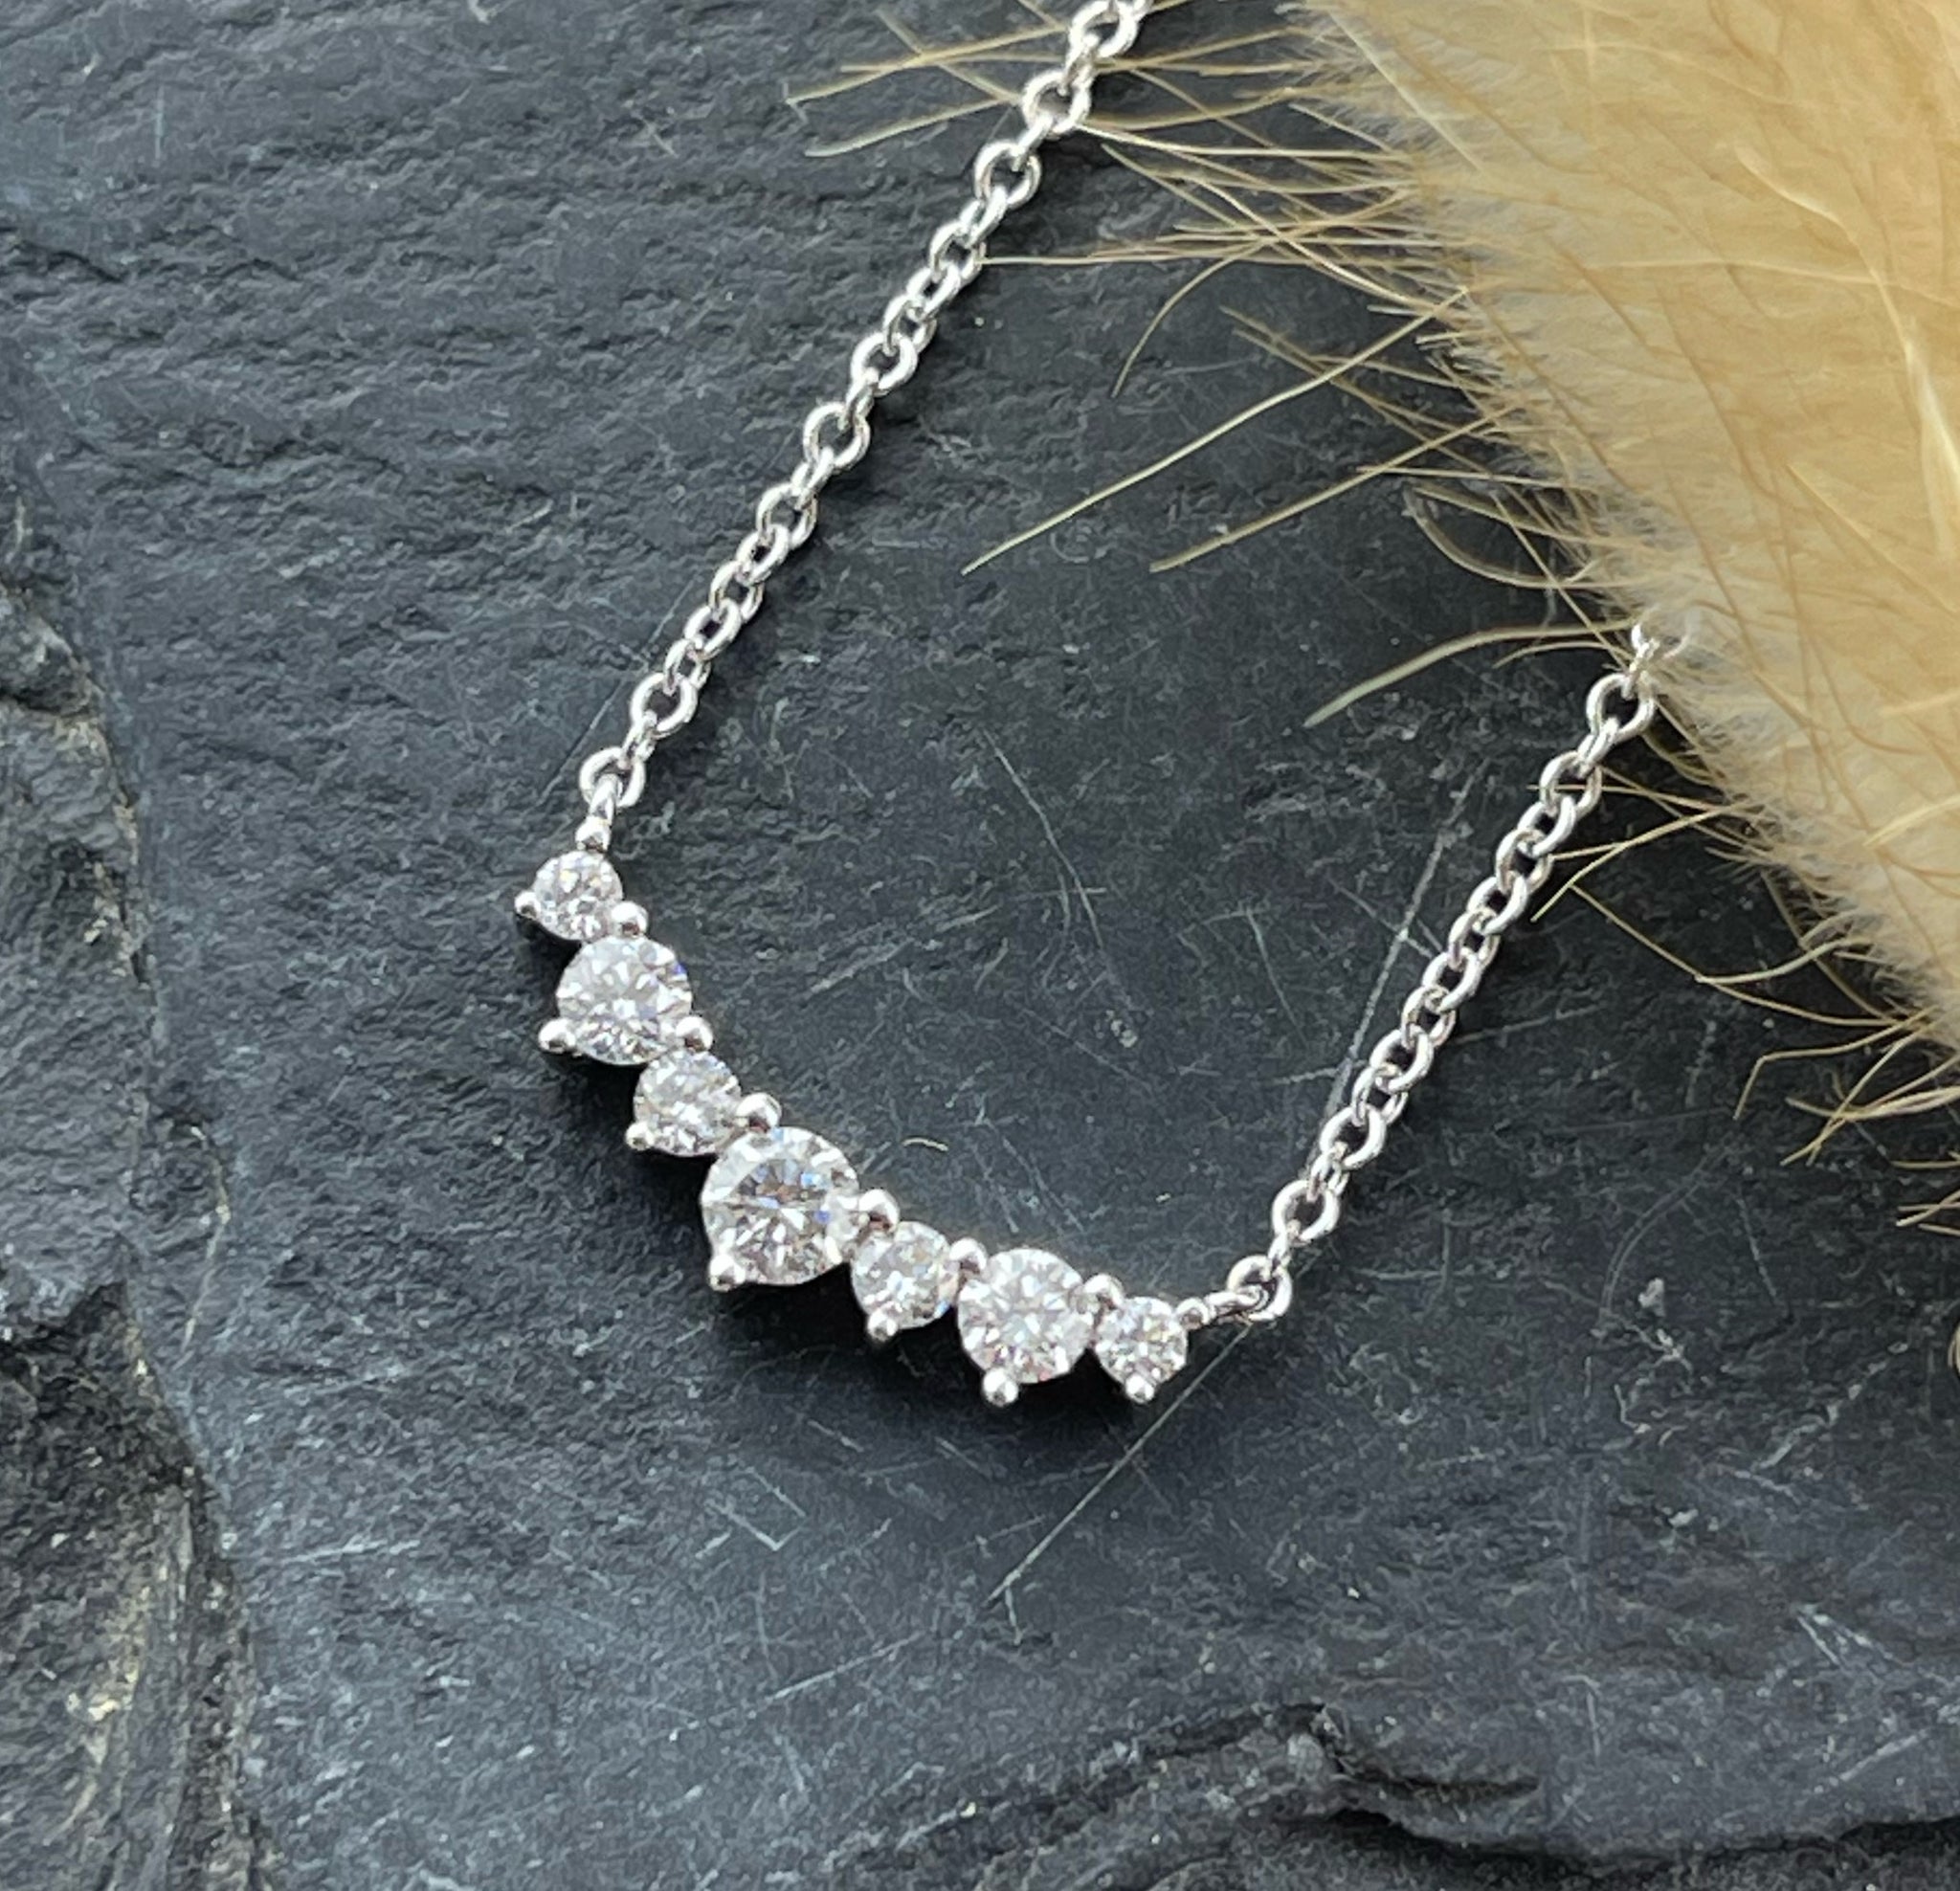 Diamond tiara necklace